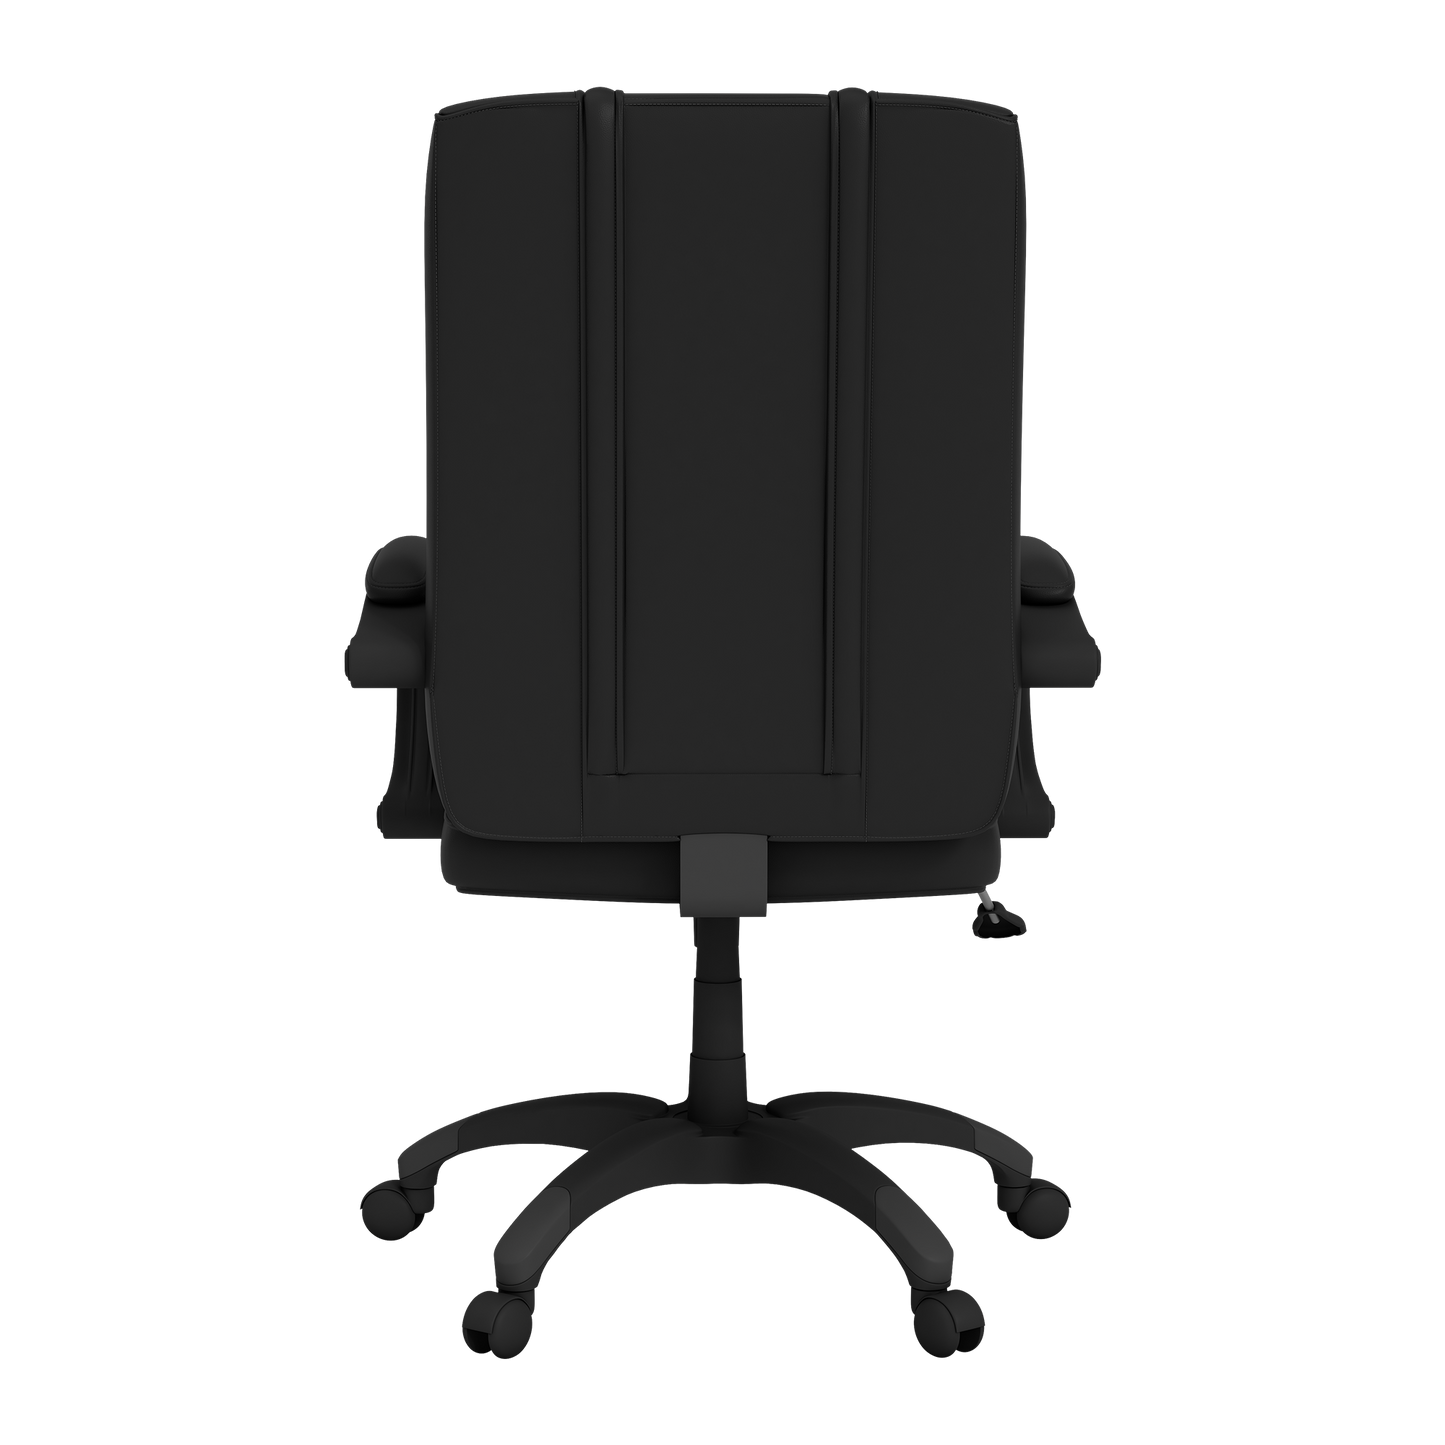 Office Chair 1000 with Major League Soccer Logo